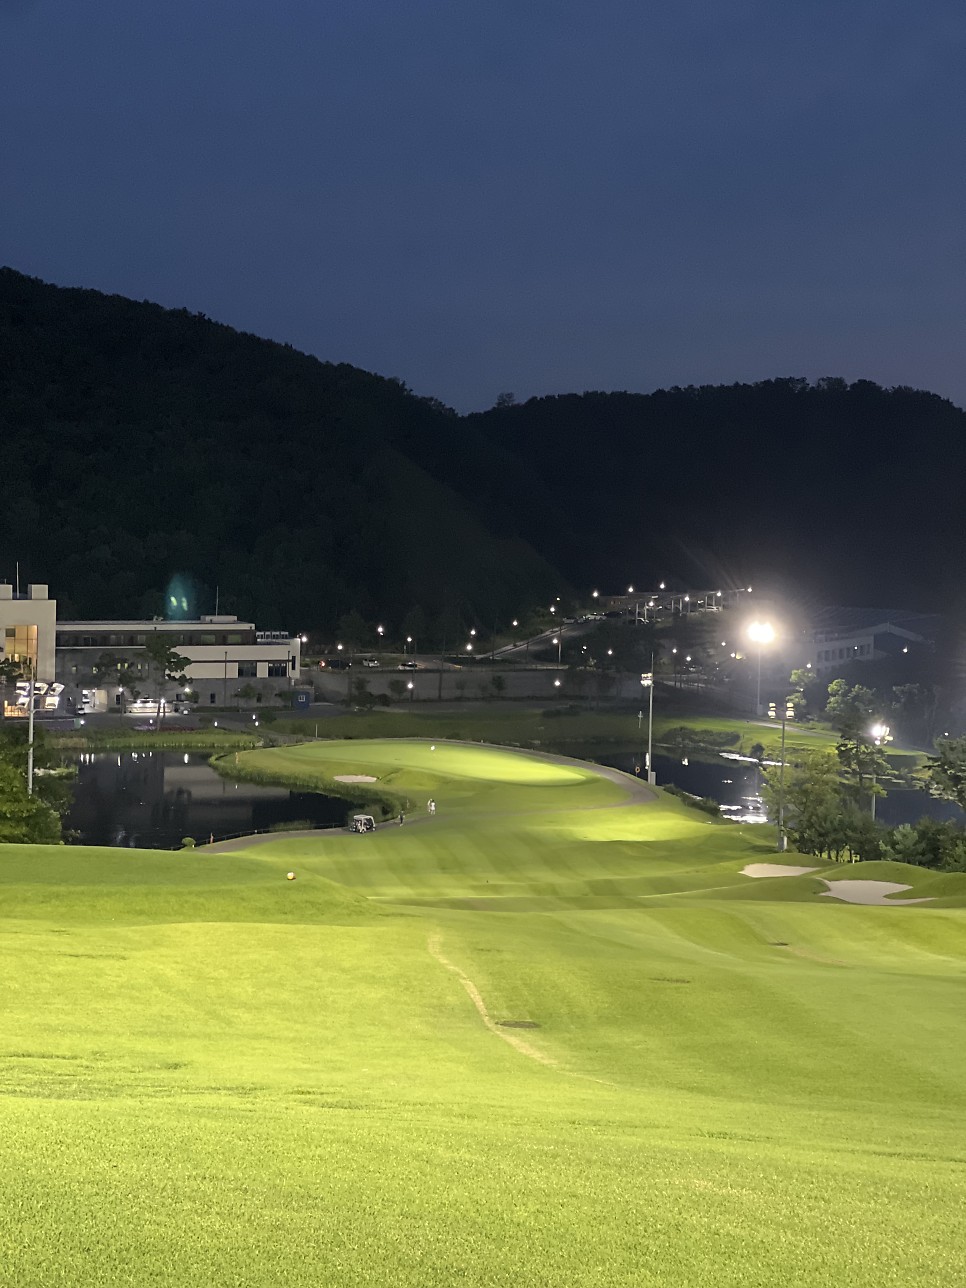 수도권에서 야간 조명 밝은 경기도 퍼블릭 골프장 루나힐스안성cc